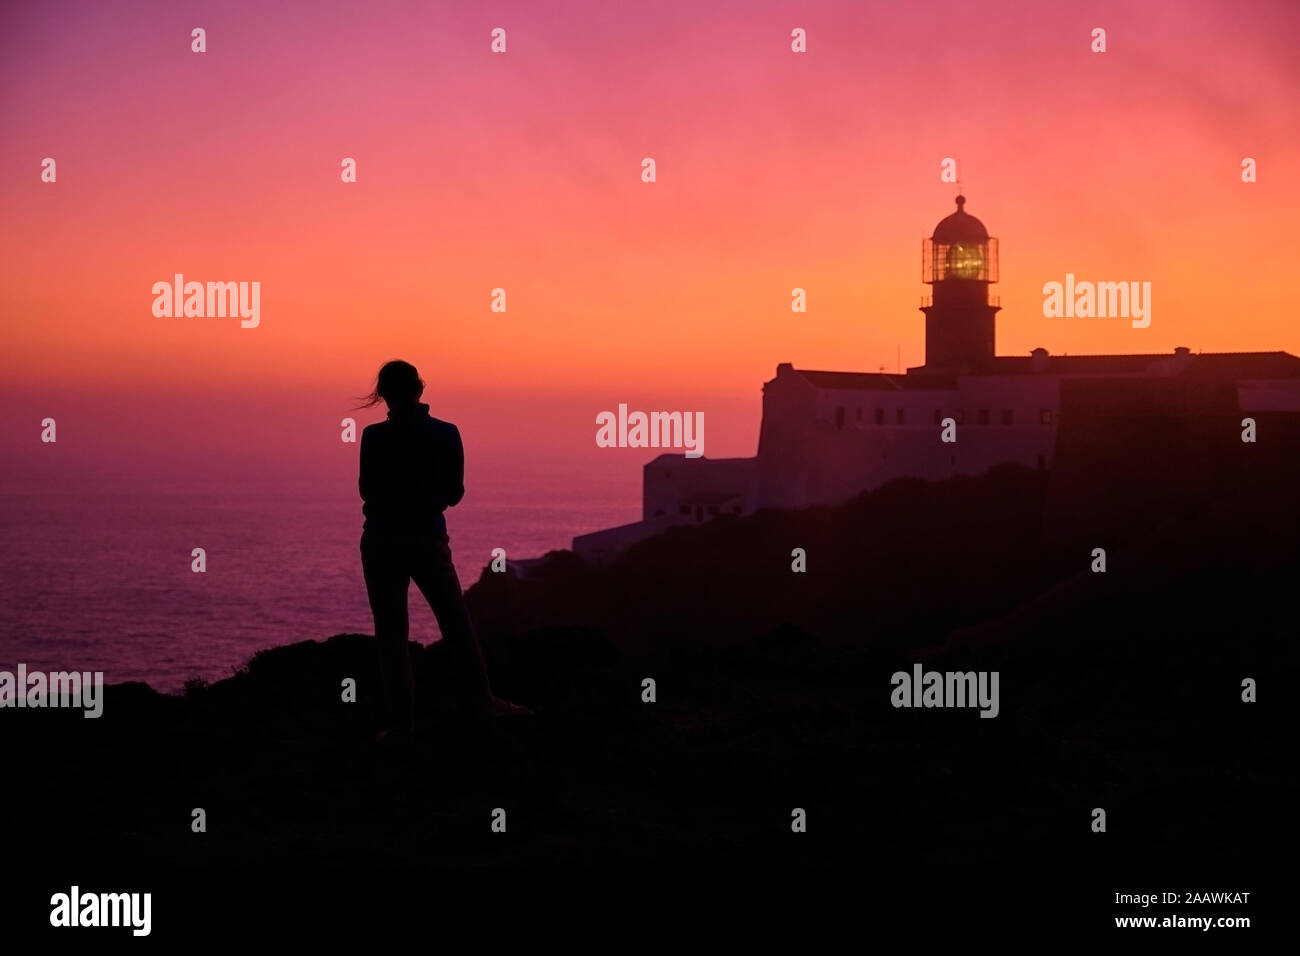 Portugal, Algarve, silueta de persona admirando la mar al amanecer con el Cabo de San Vicente lighthouse en segundo plano. Foto de stock